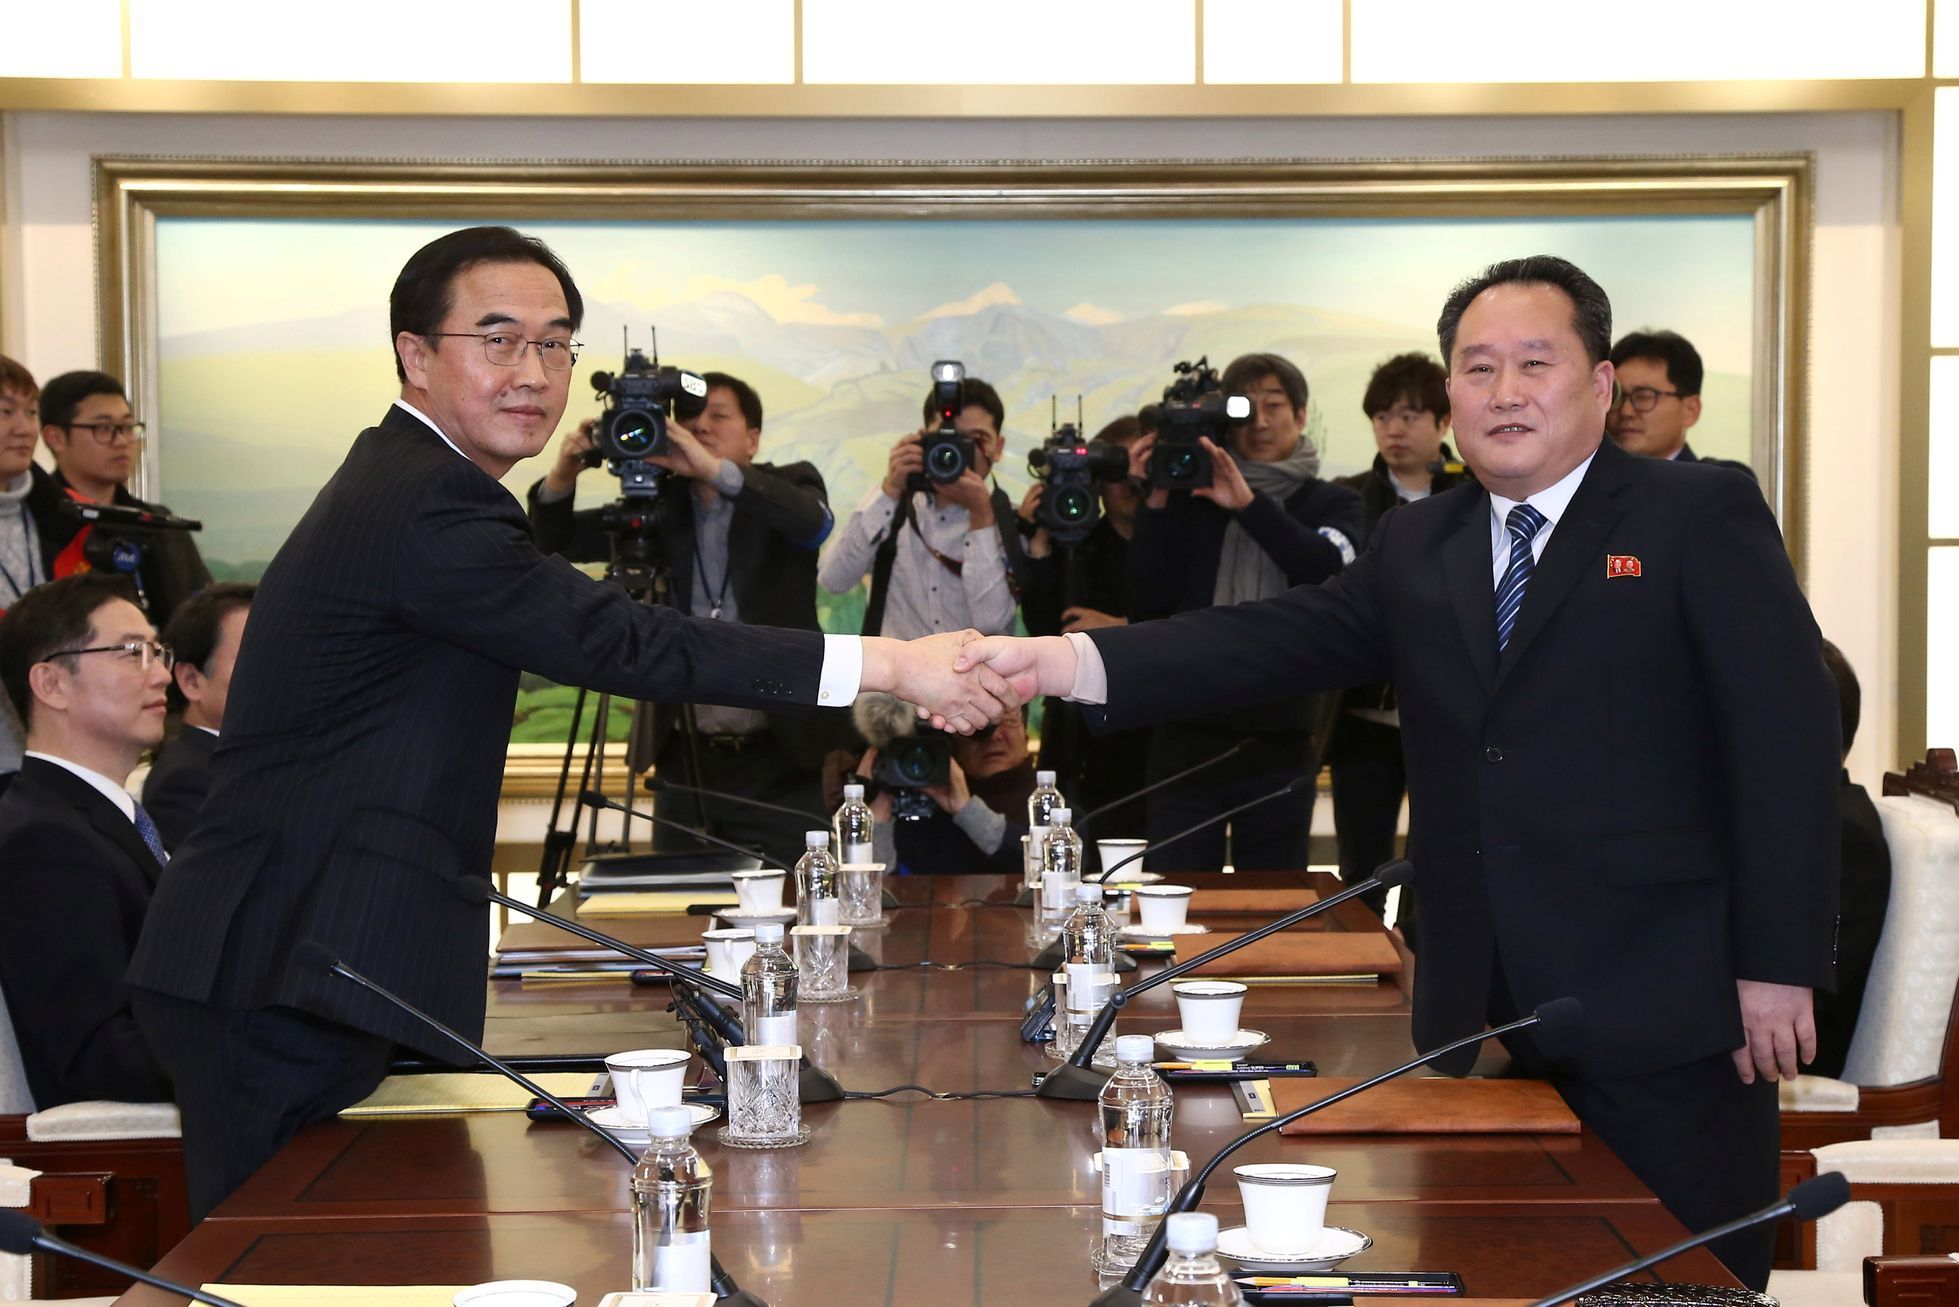 Šéf severokorejské delegace si třese pravicí s jihokorejským ministrem pro sjednocení Čo Mjong-kjonem.